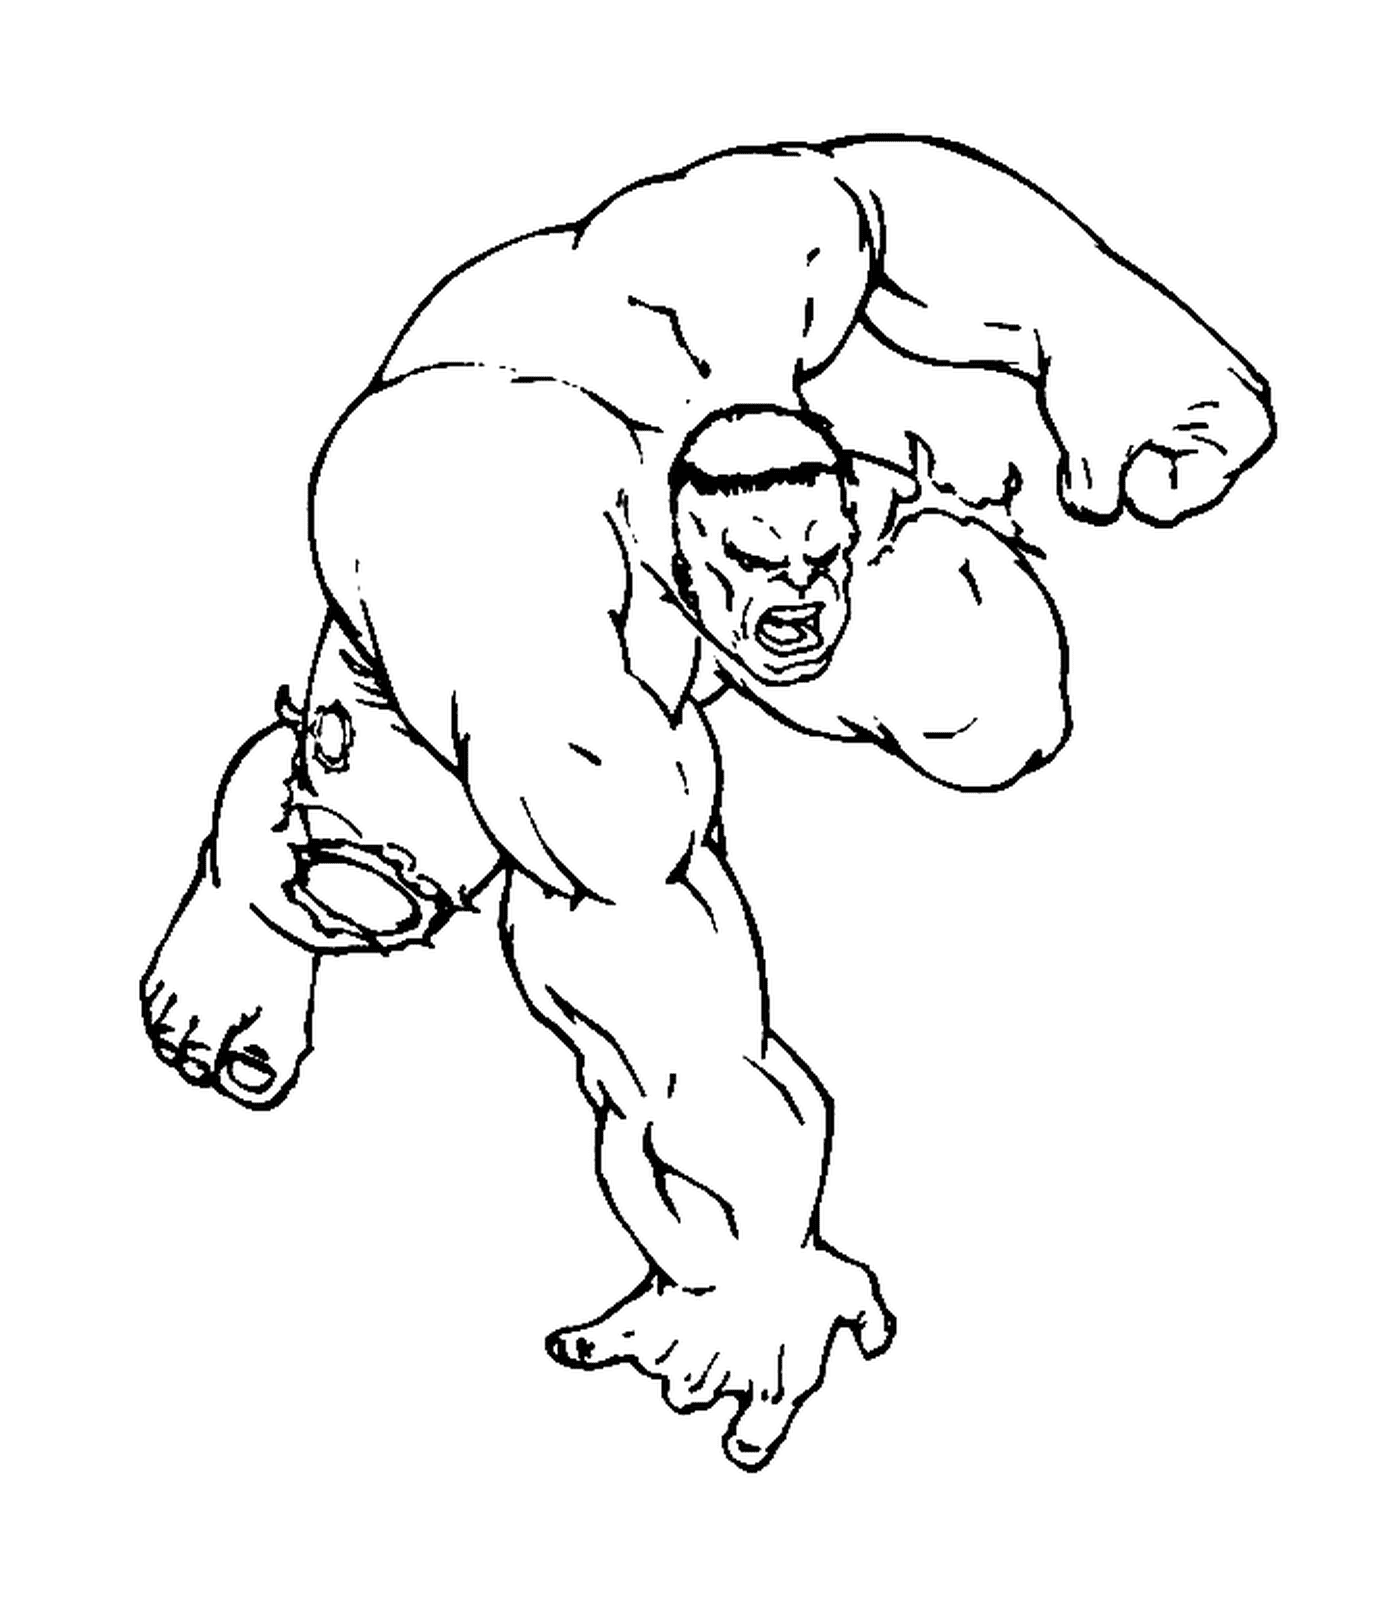   Hulk prêt à courir 